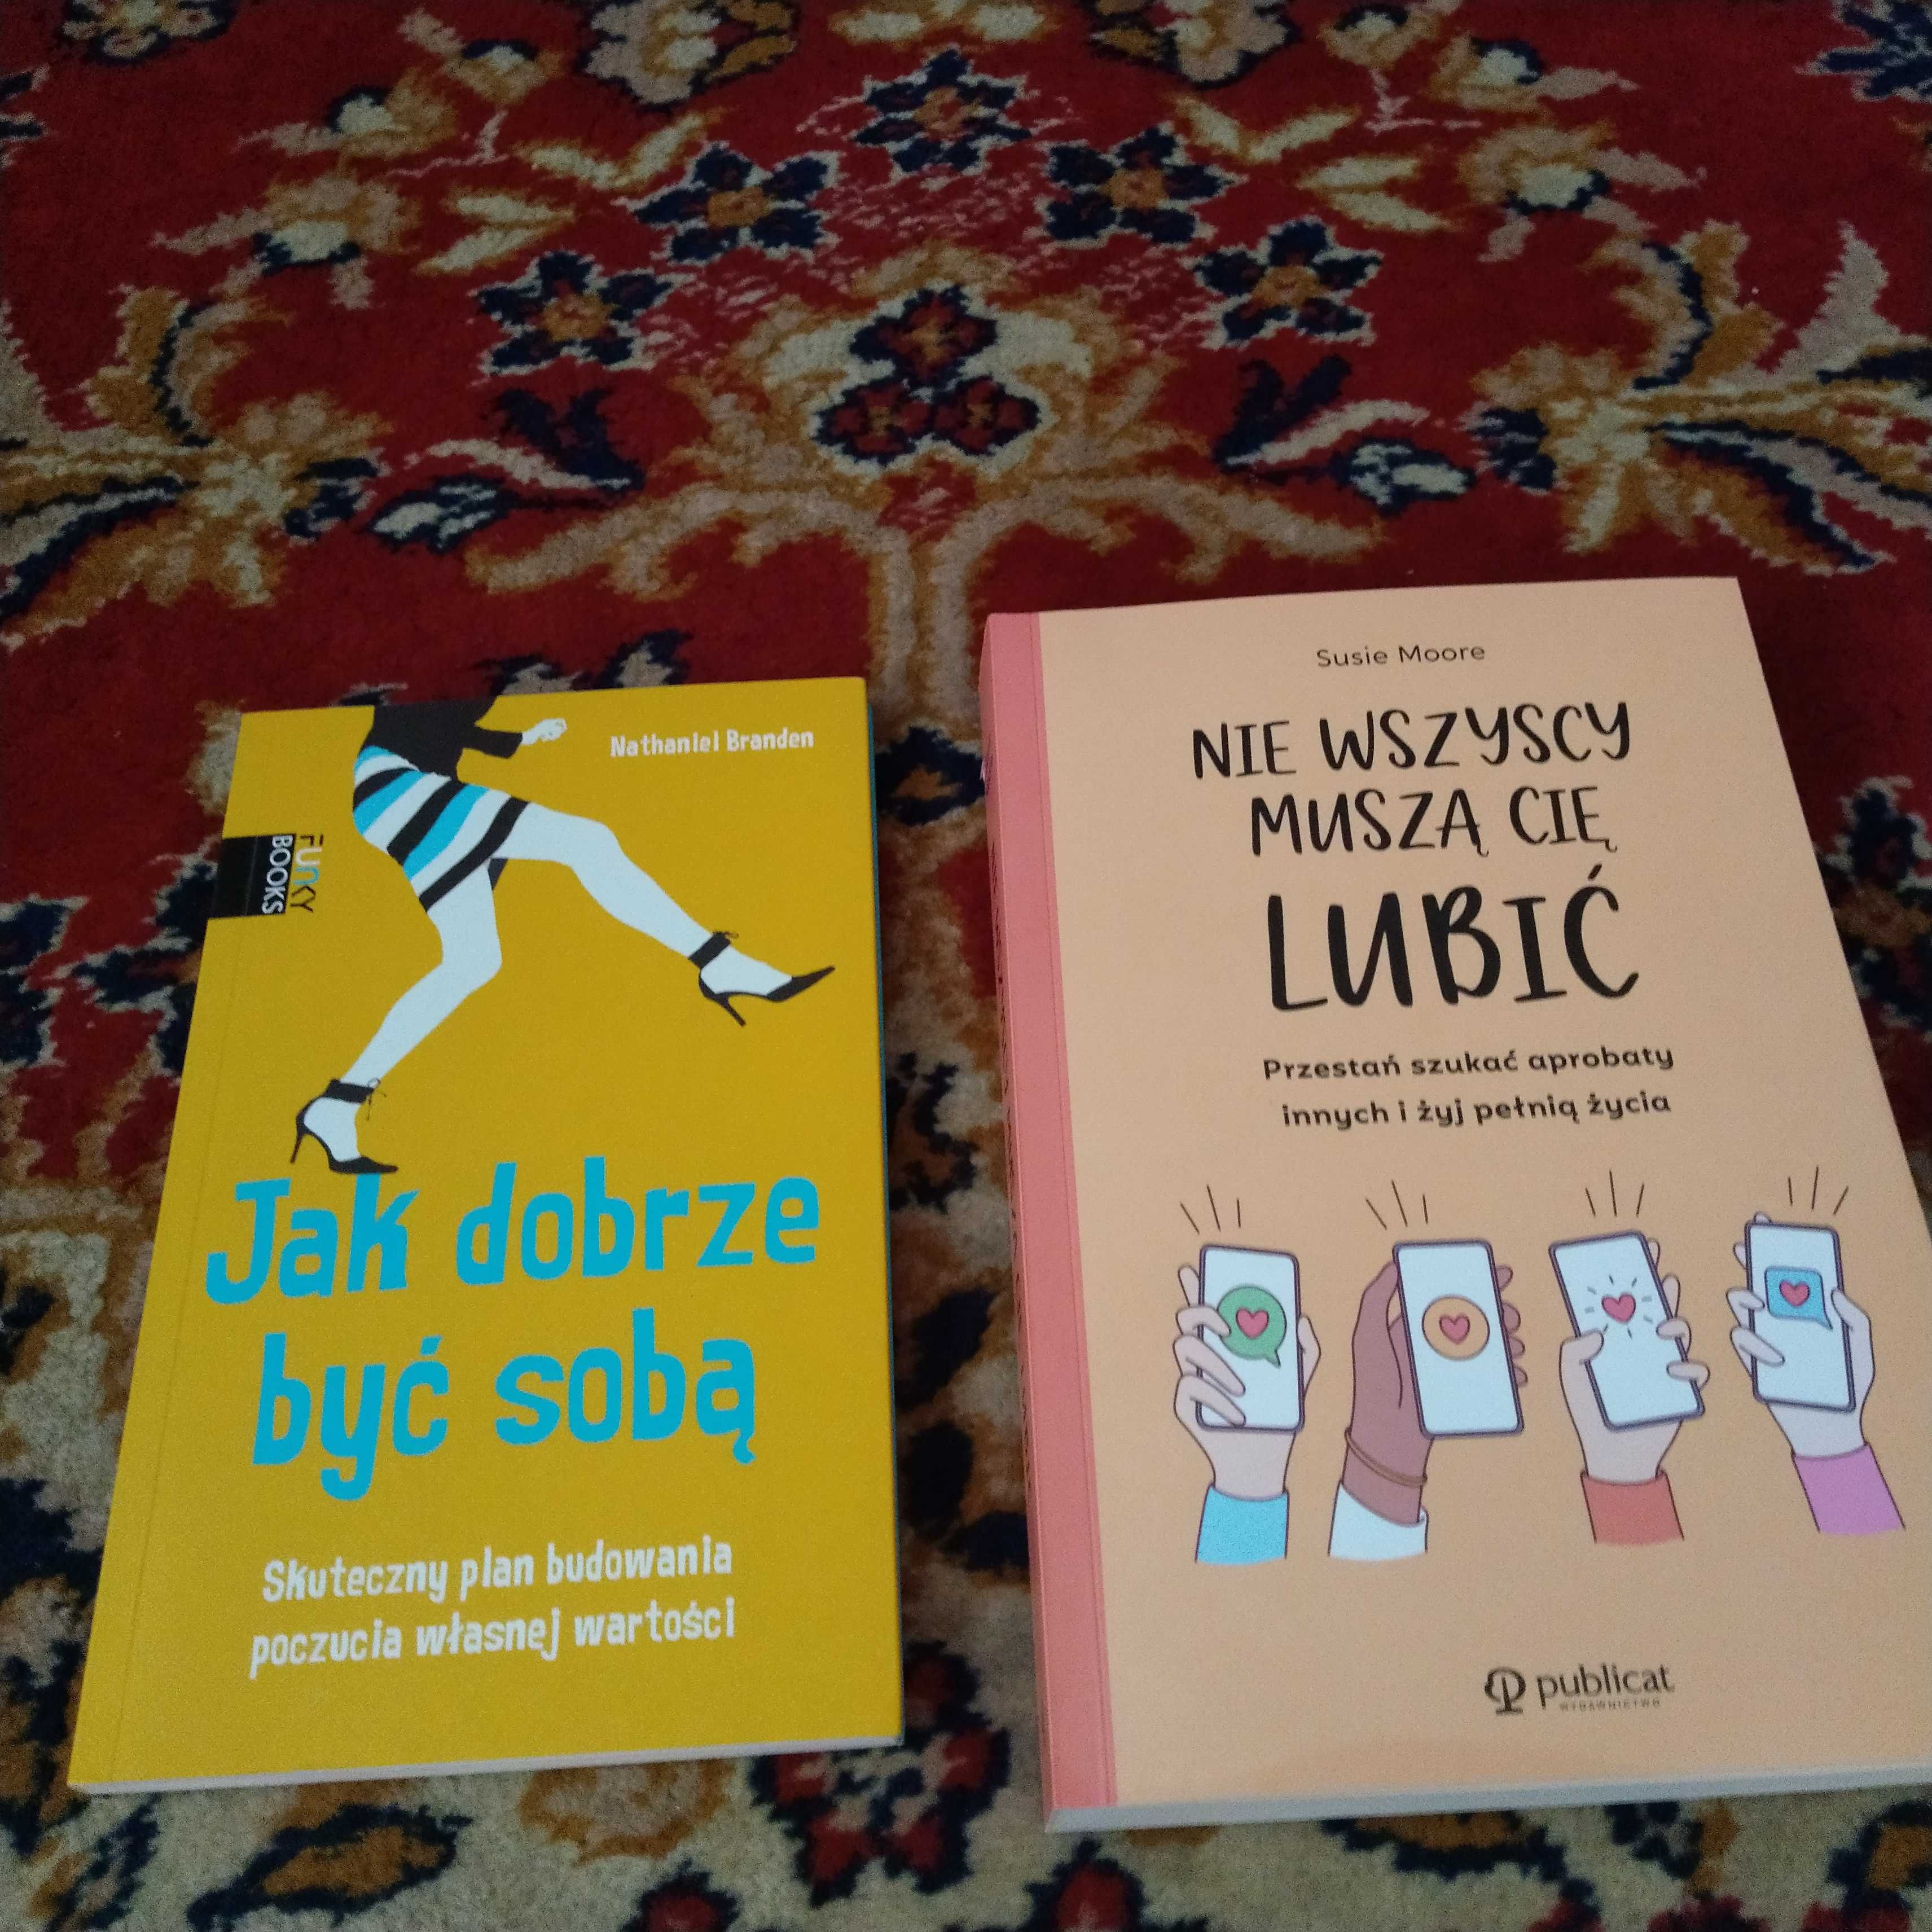 Dwie książki Jak dobrze być sobą